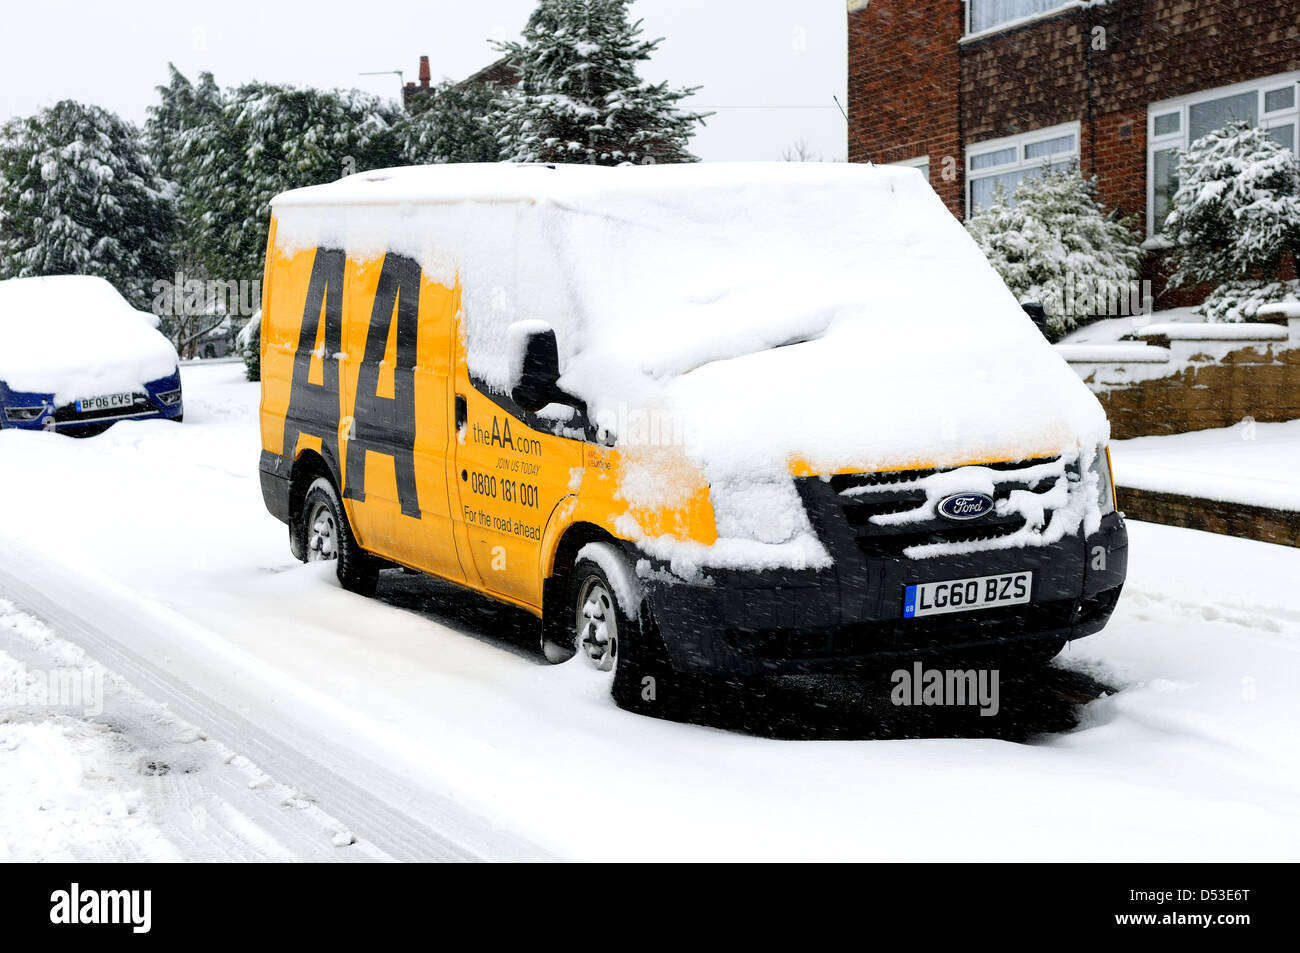 Hucknall, Notts, UK. 23. März 2013. Schnee ist weiterhin hinzufügen bereits tiefen Schnee fallen. AA Auto abschöpfen Fahrzeug mit Schnee bedeckt. Bildnachweis: Ian Francis / Alamy Live News Stockfoto